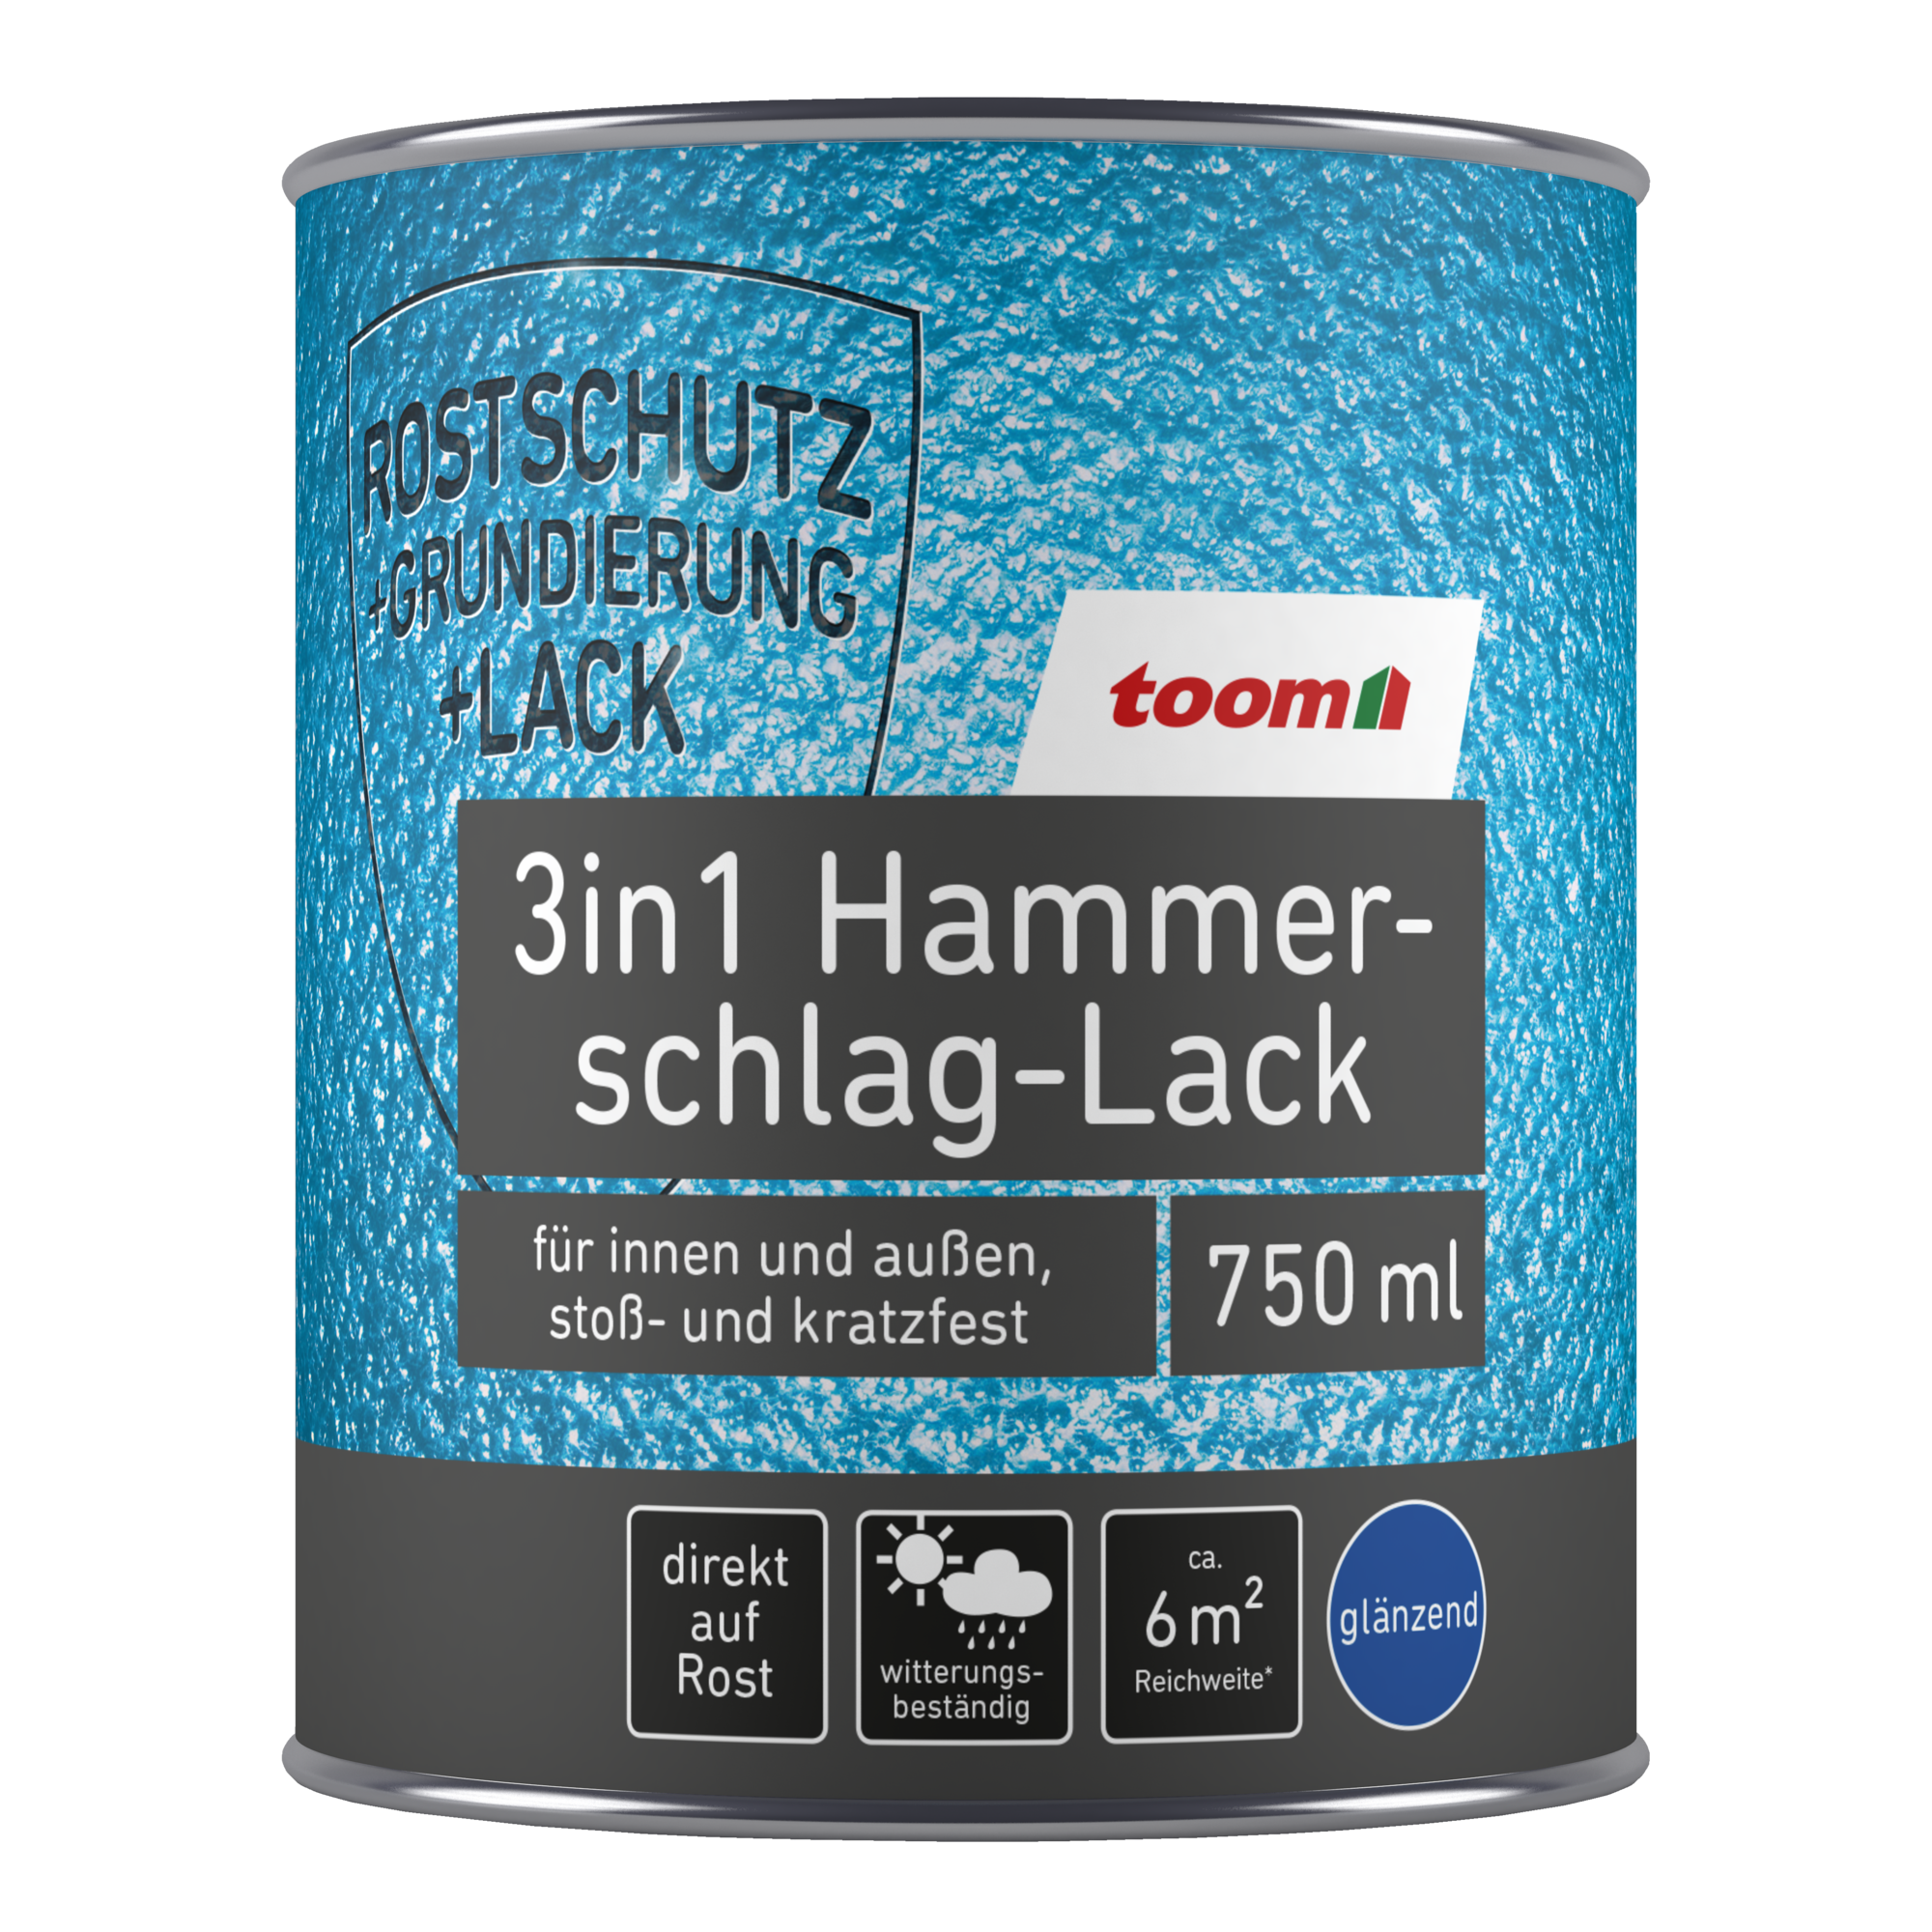 3in1 Hammerschlag-Lack kupferfarben glänzend 750 ml + product picture